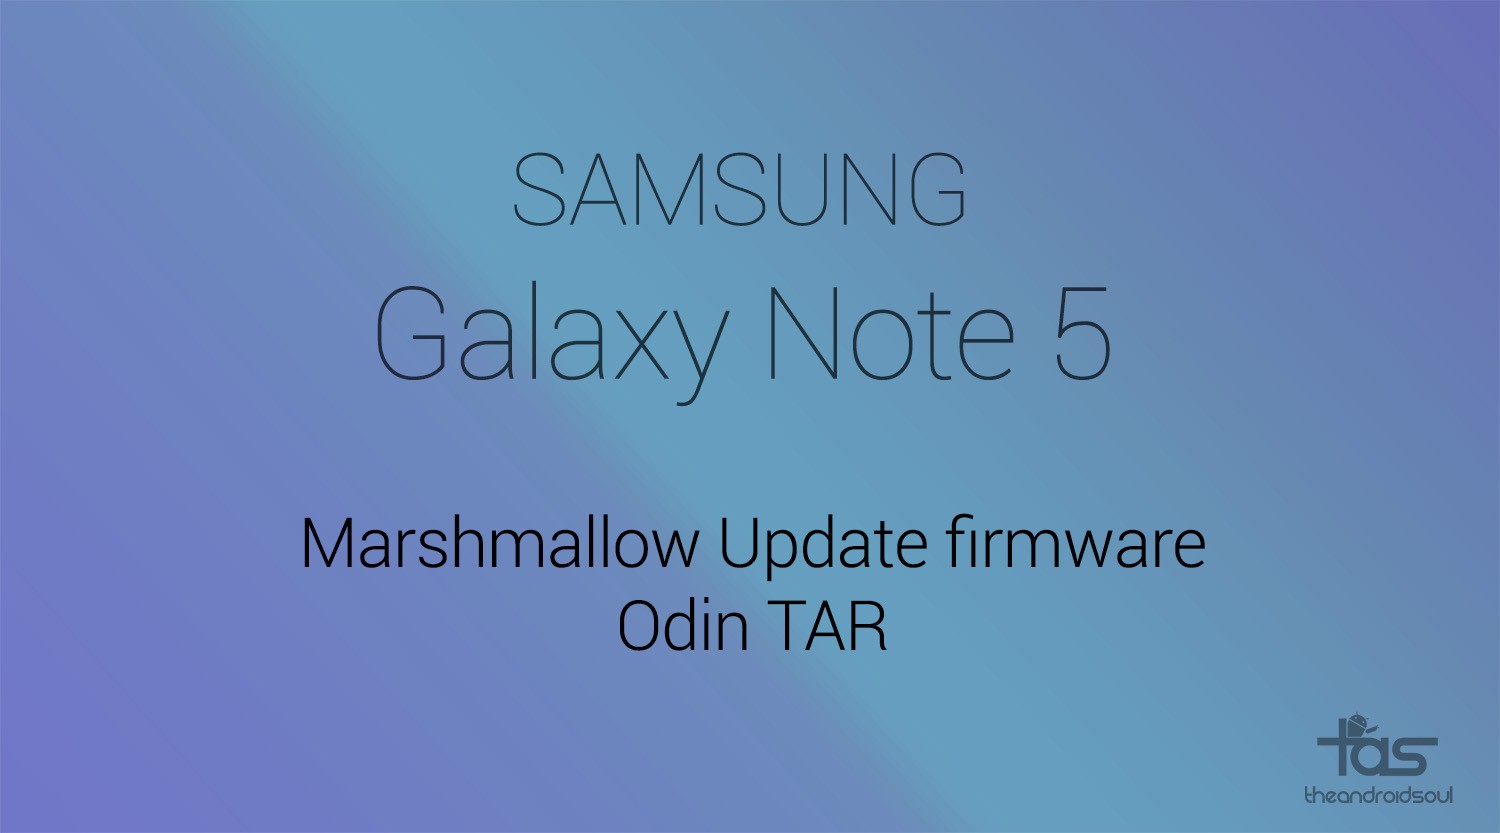 [TAR] Descargue el firmware de actualización de T-Mobile Galaxy Note 5 Marshmallow